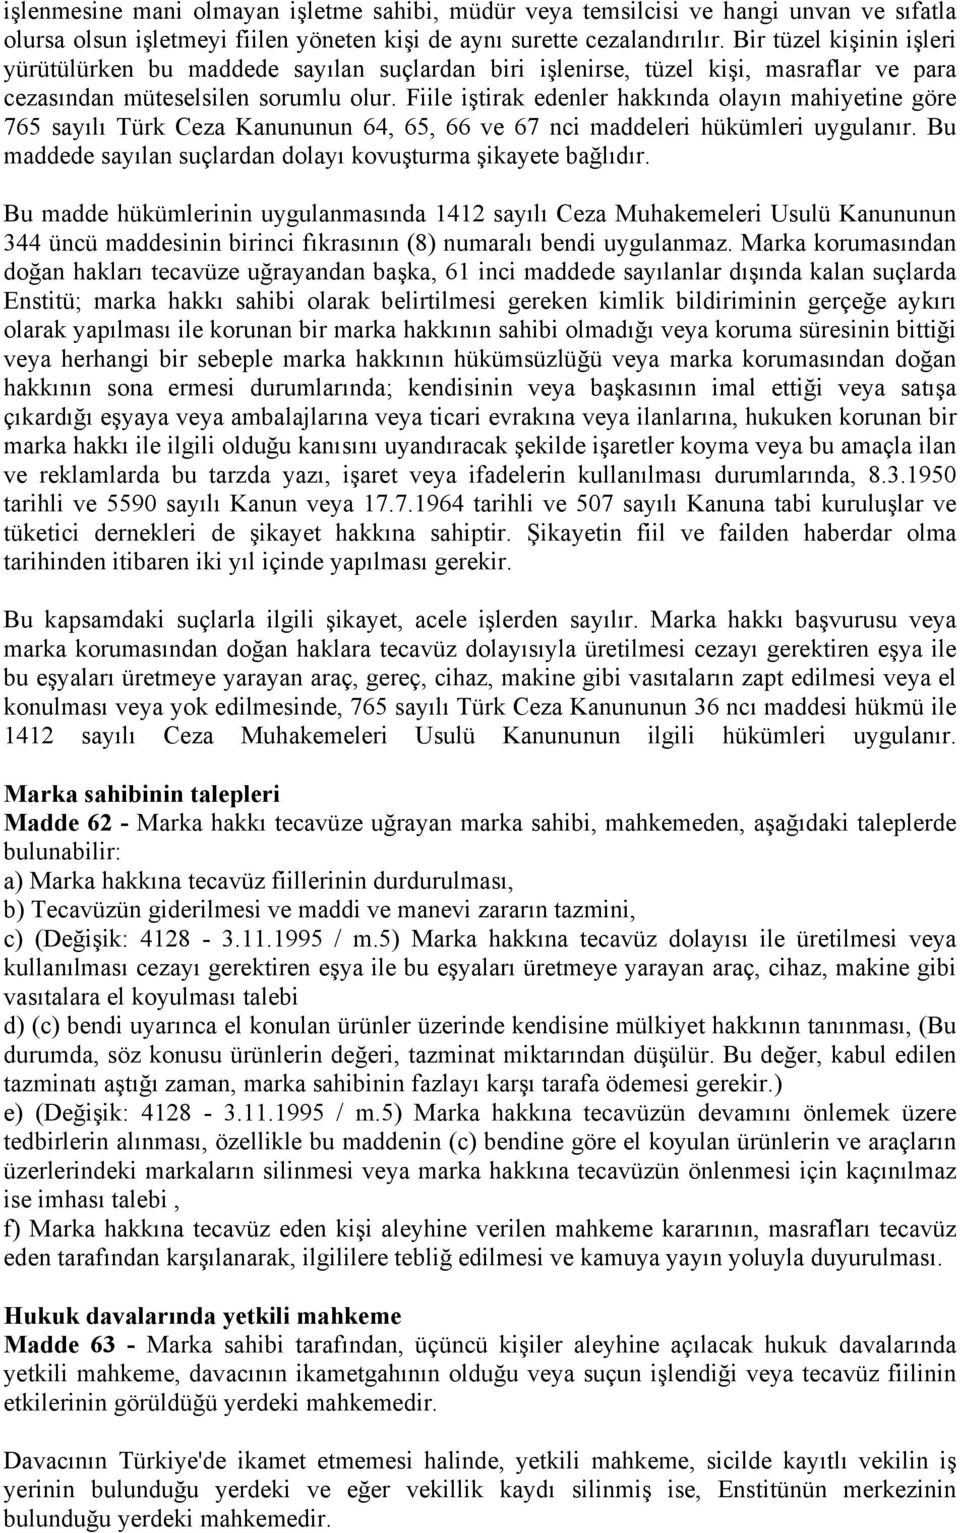 Fiile iştirak edenler hakkında olayın mahiyetine göre 765 sayılı Türk Ceza Kanununun 64, 65, 66 ve 67 nci maddeleri hükümleri uygulanır.